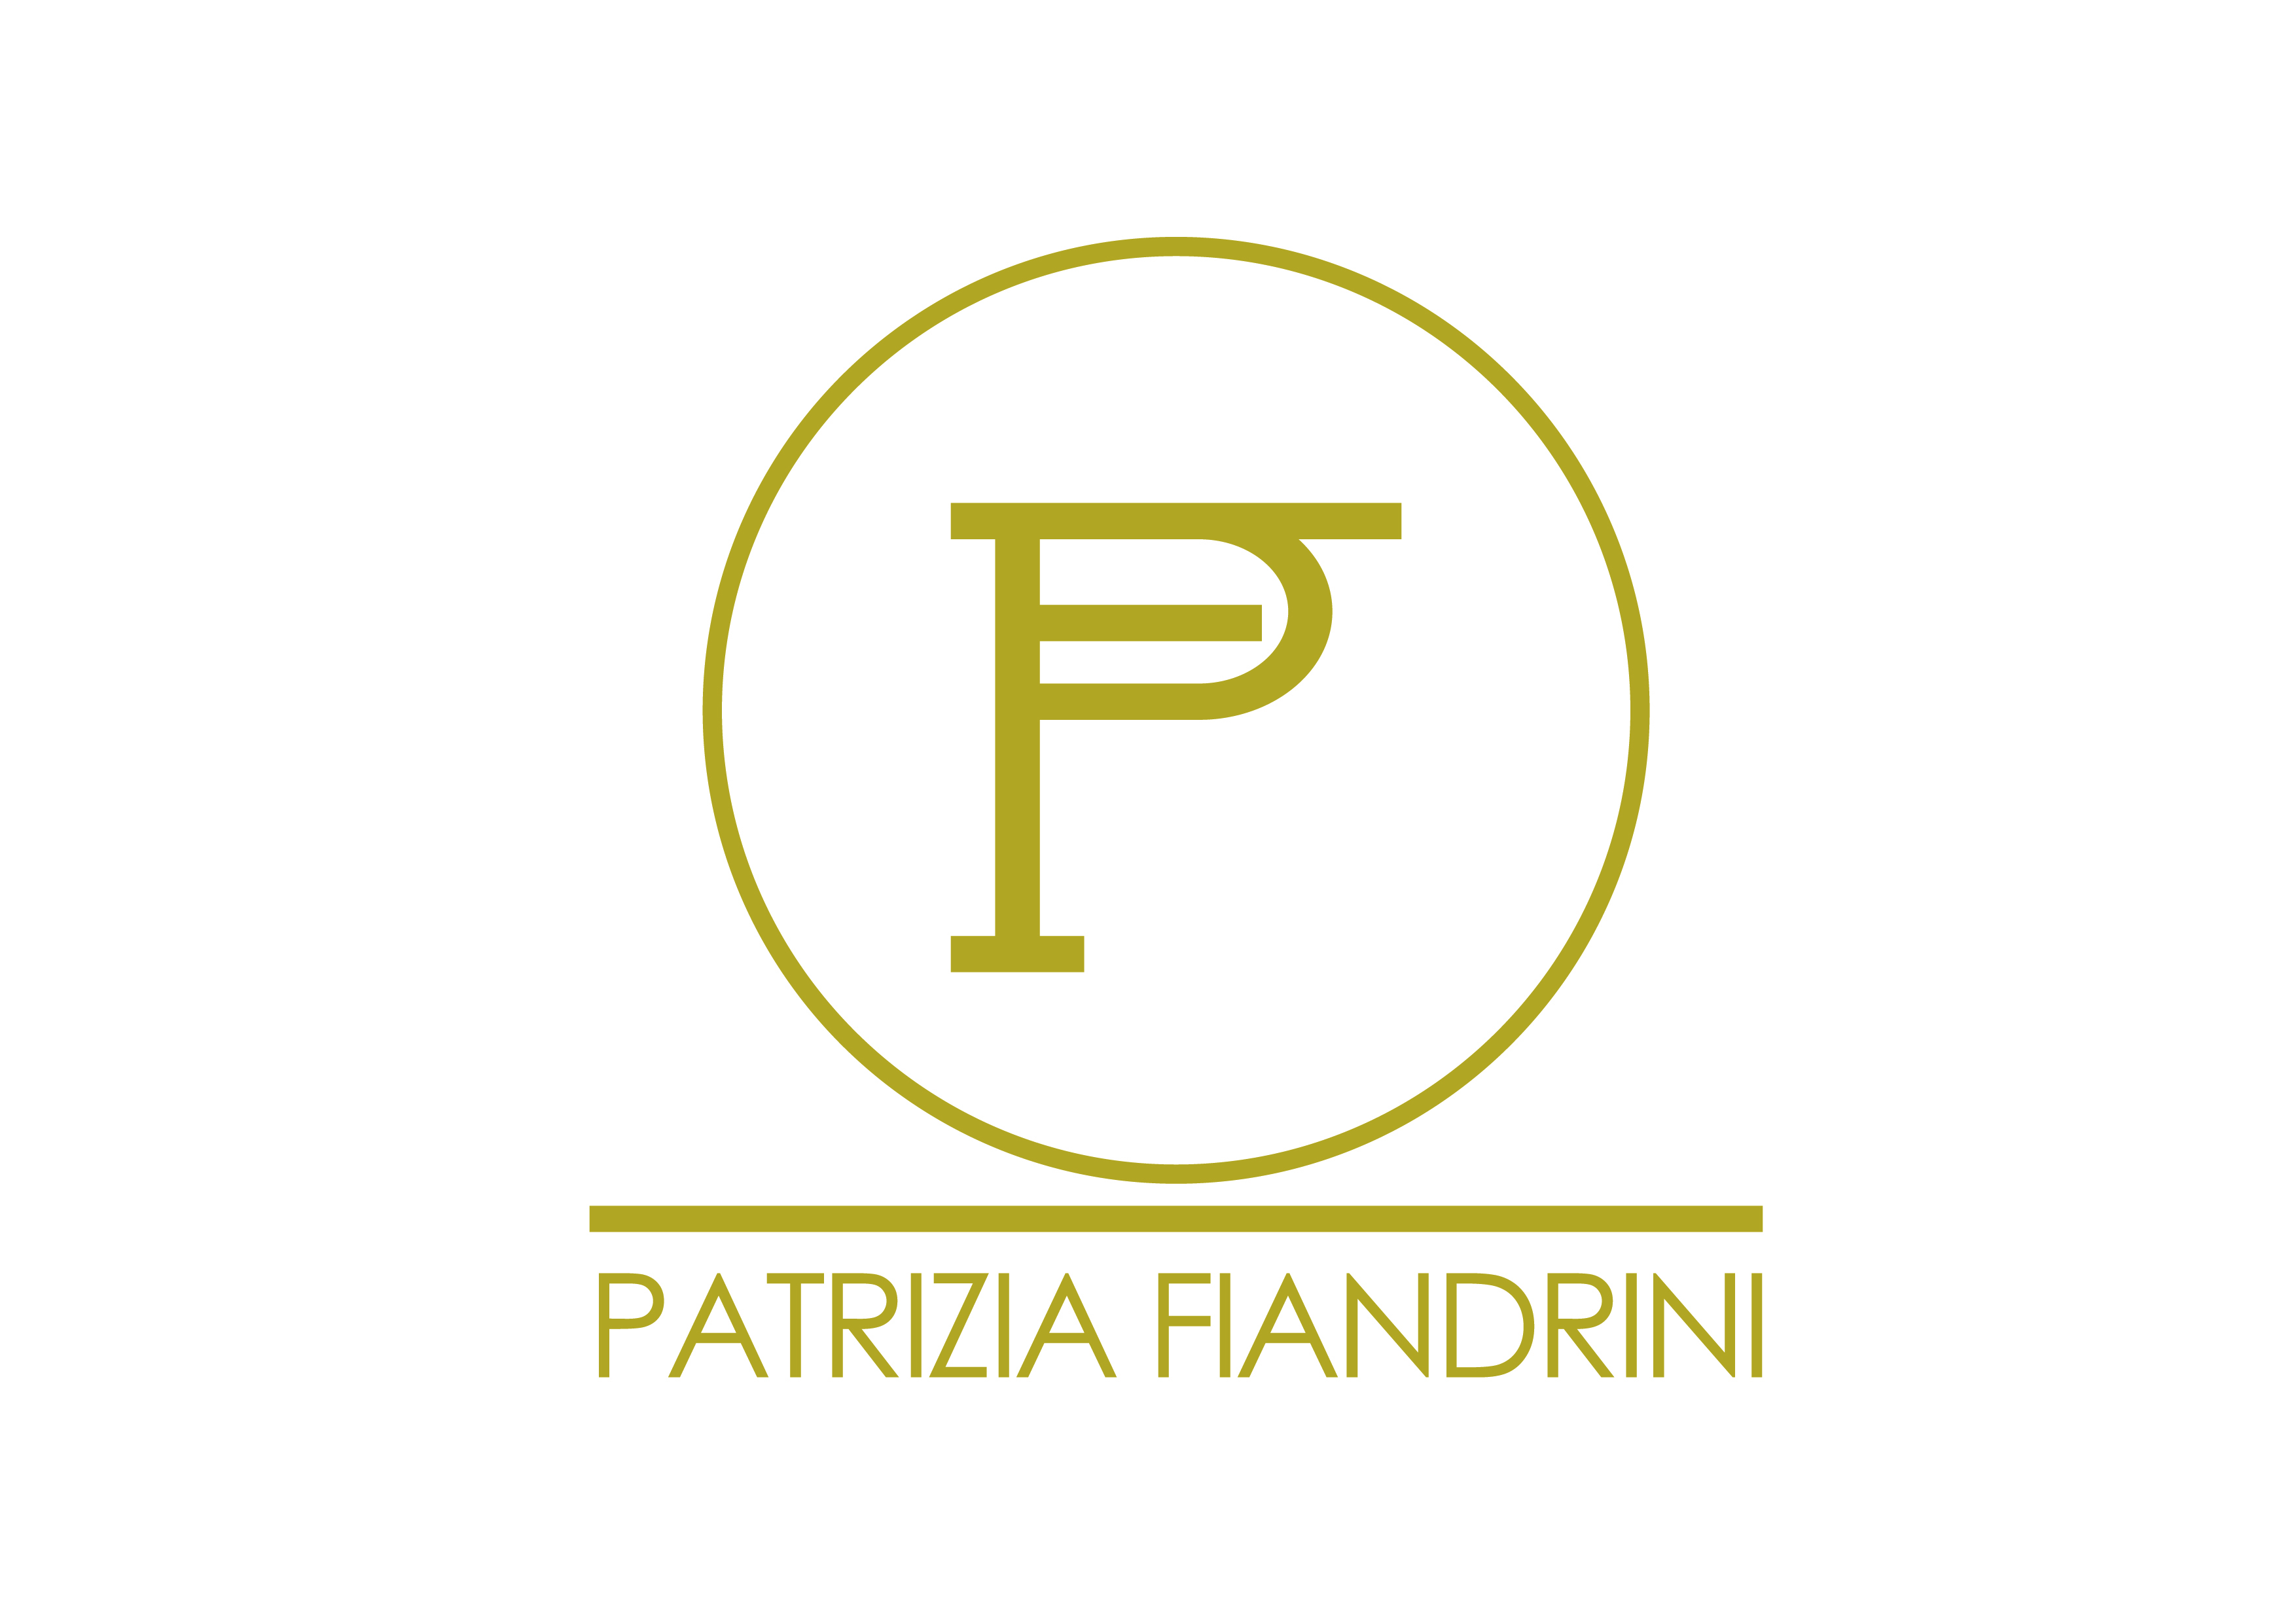 Patrizia Fiandrini